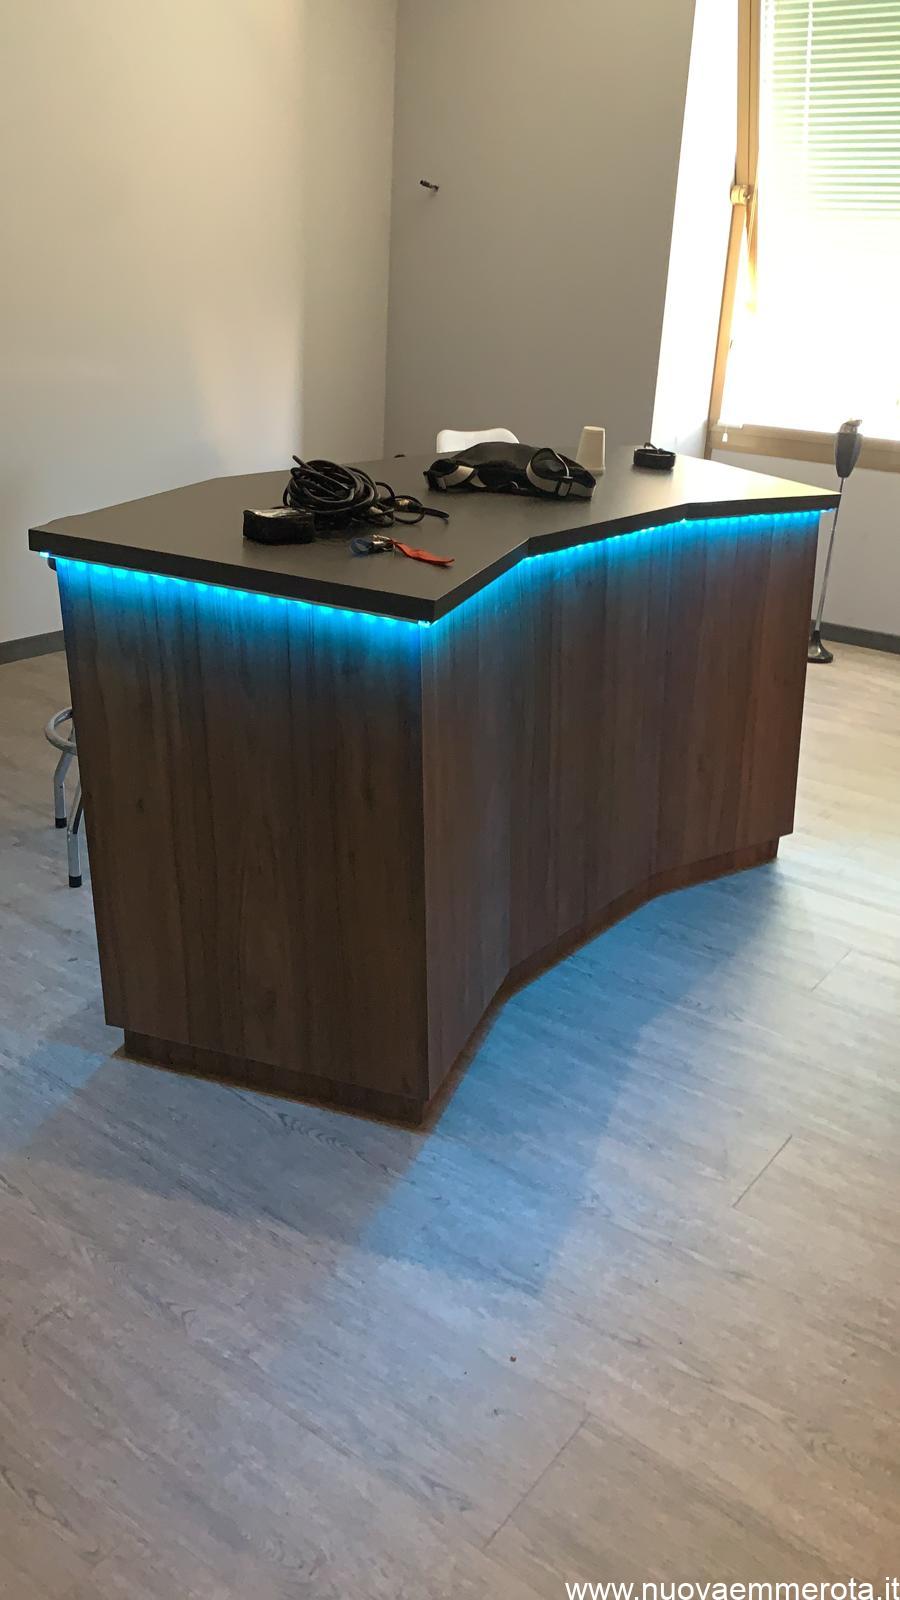 Bancone in legno con luce led blu per ufficio musica.